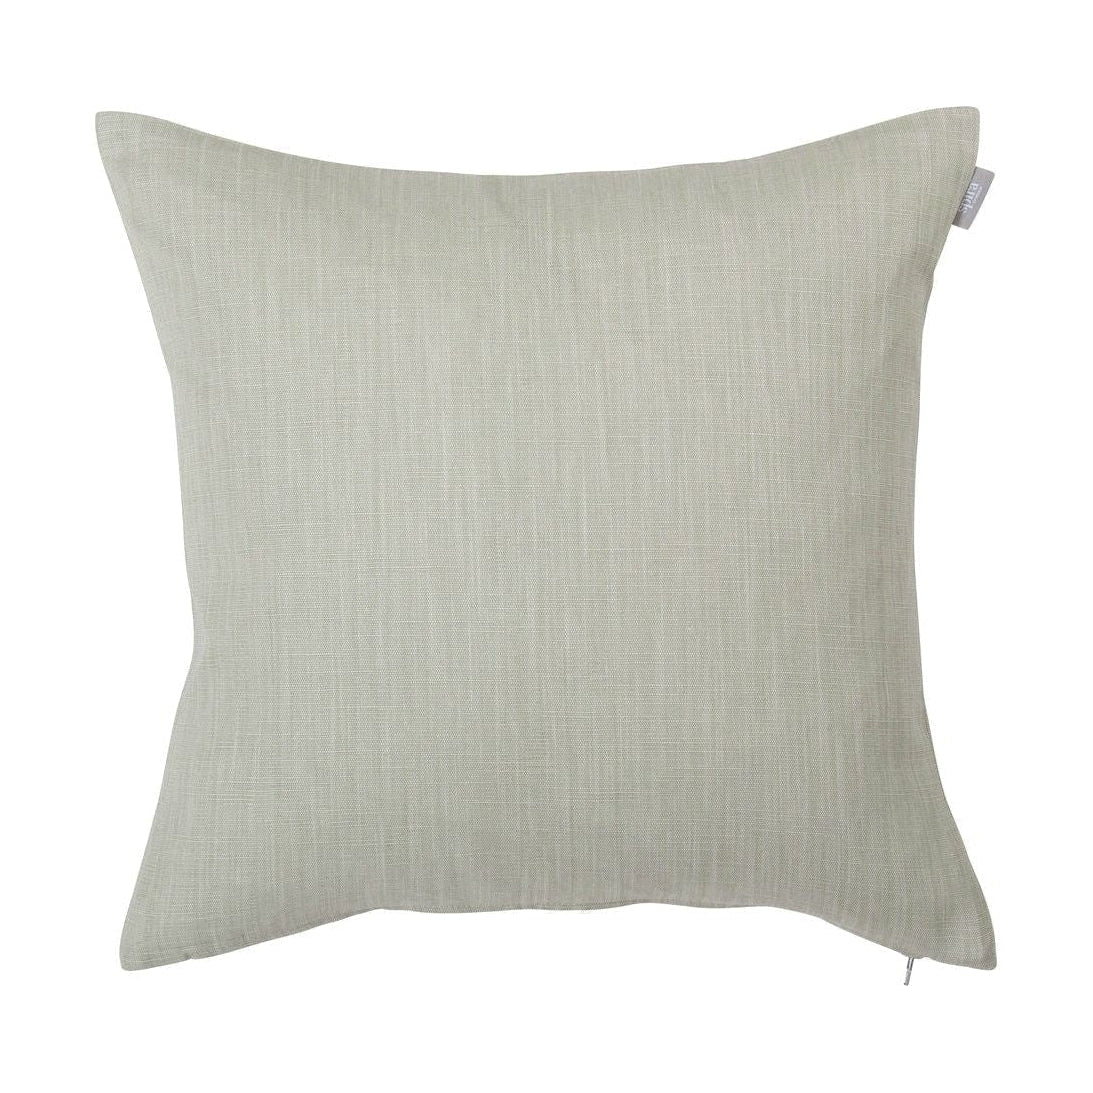 Spira Släte 50 I Klotz Cushion Cover, Linen